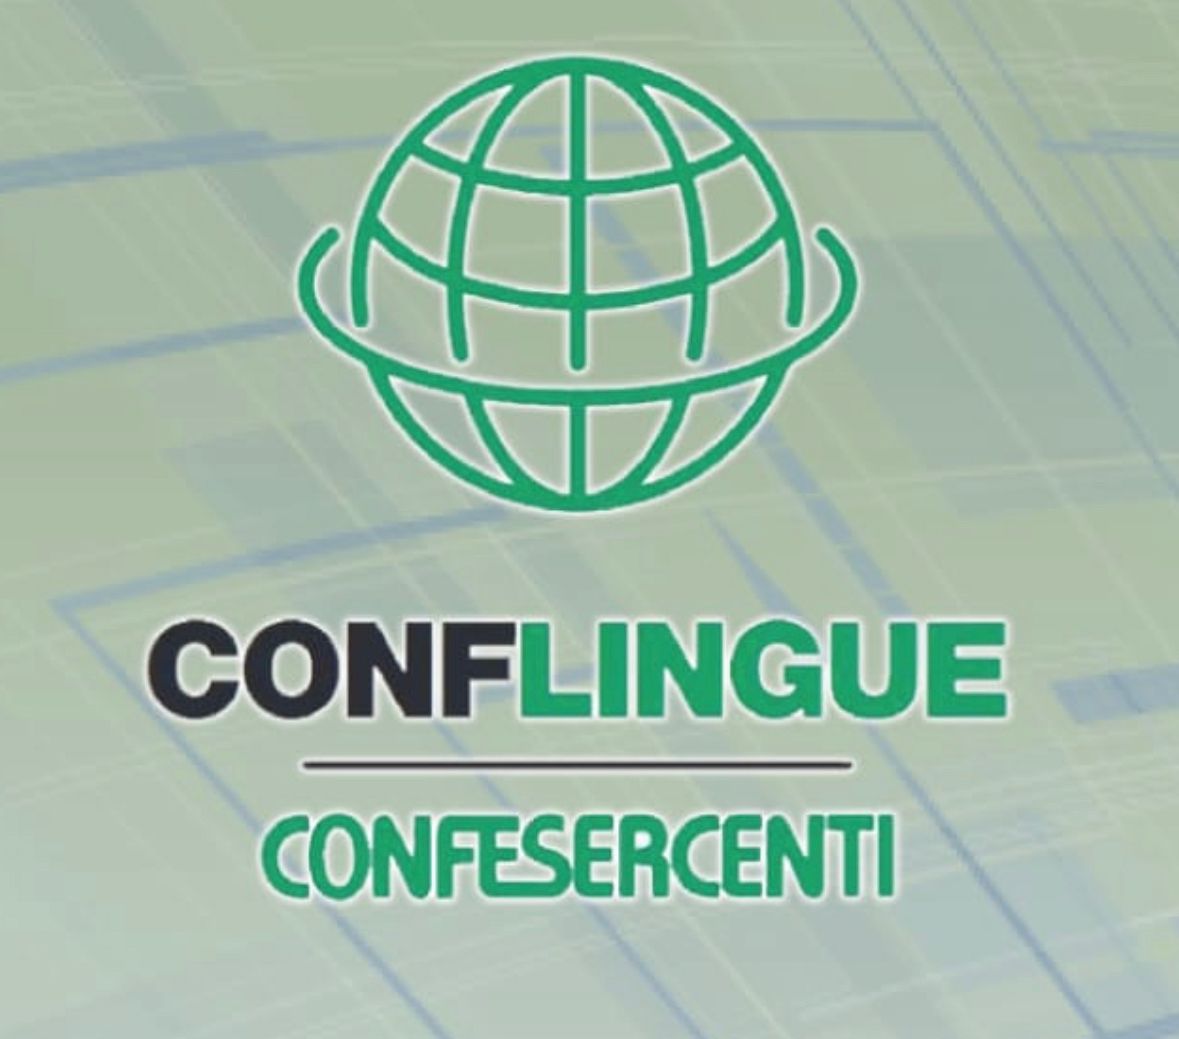 Confesercenti Campania-Conflingue: binomio per tutelare il settore linguistico del turismo